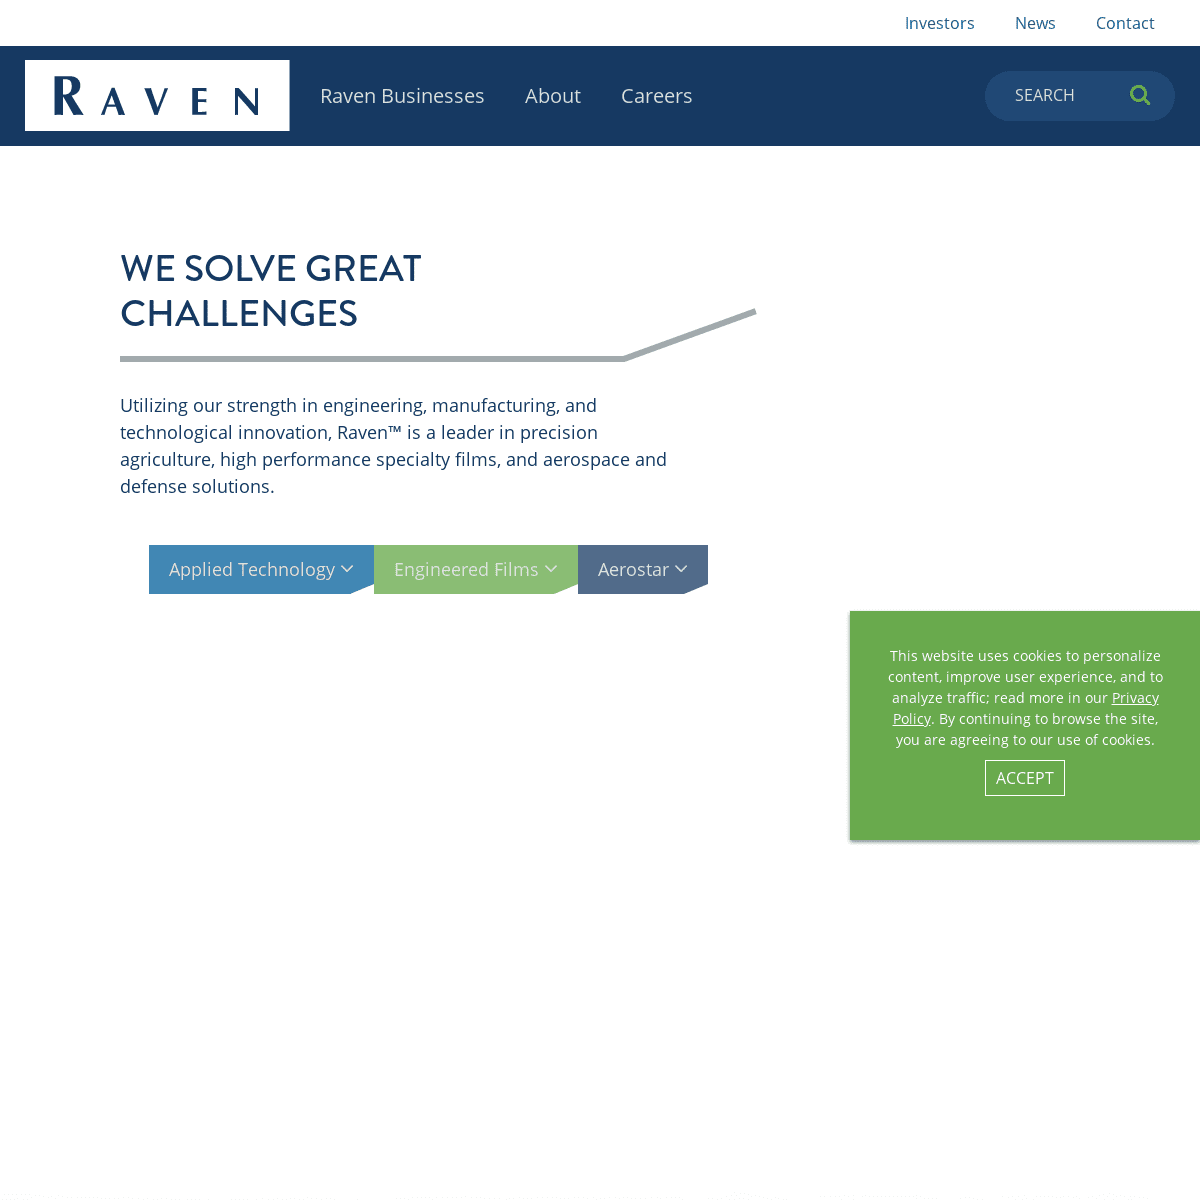 A complete backup of https://ravenind.com